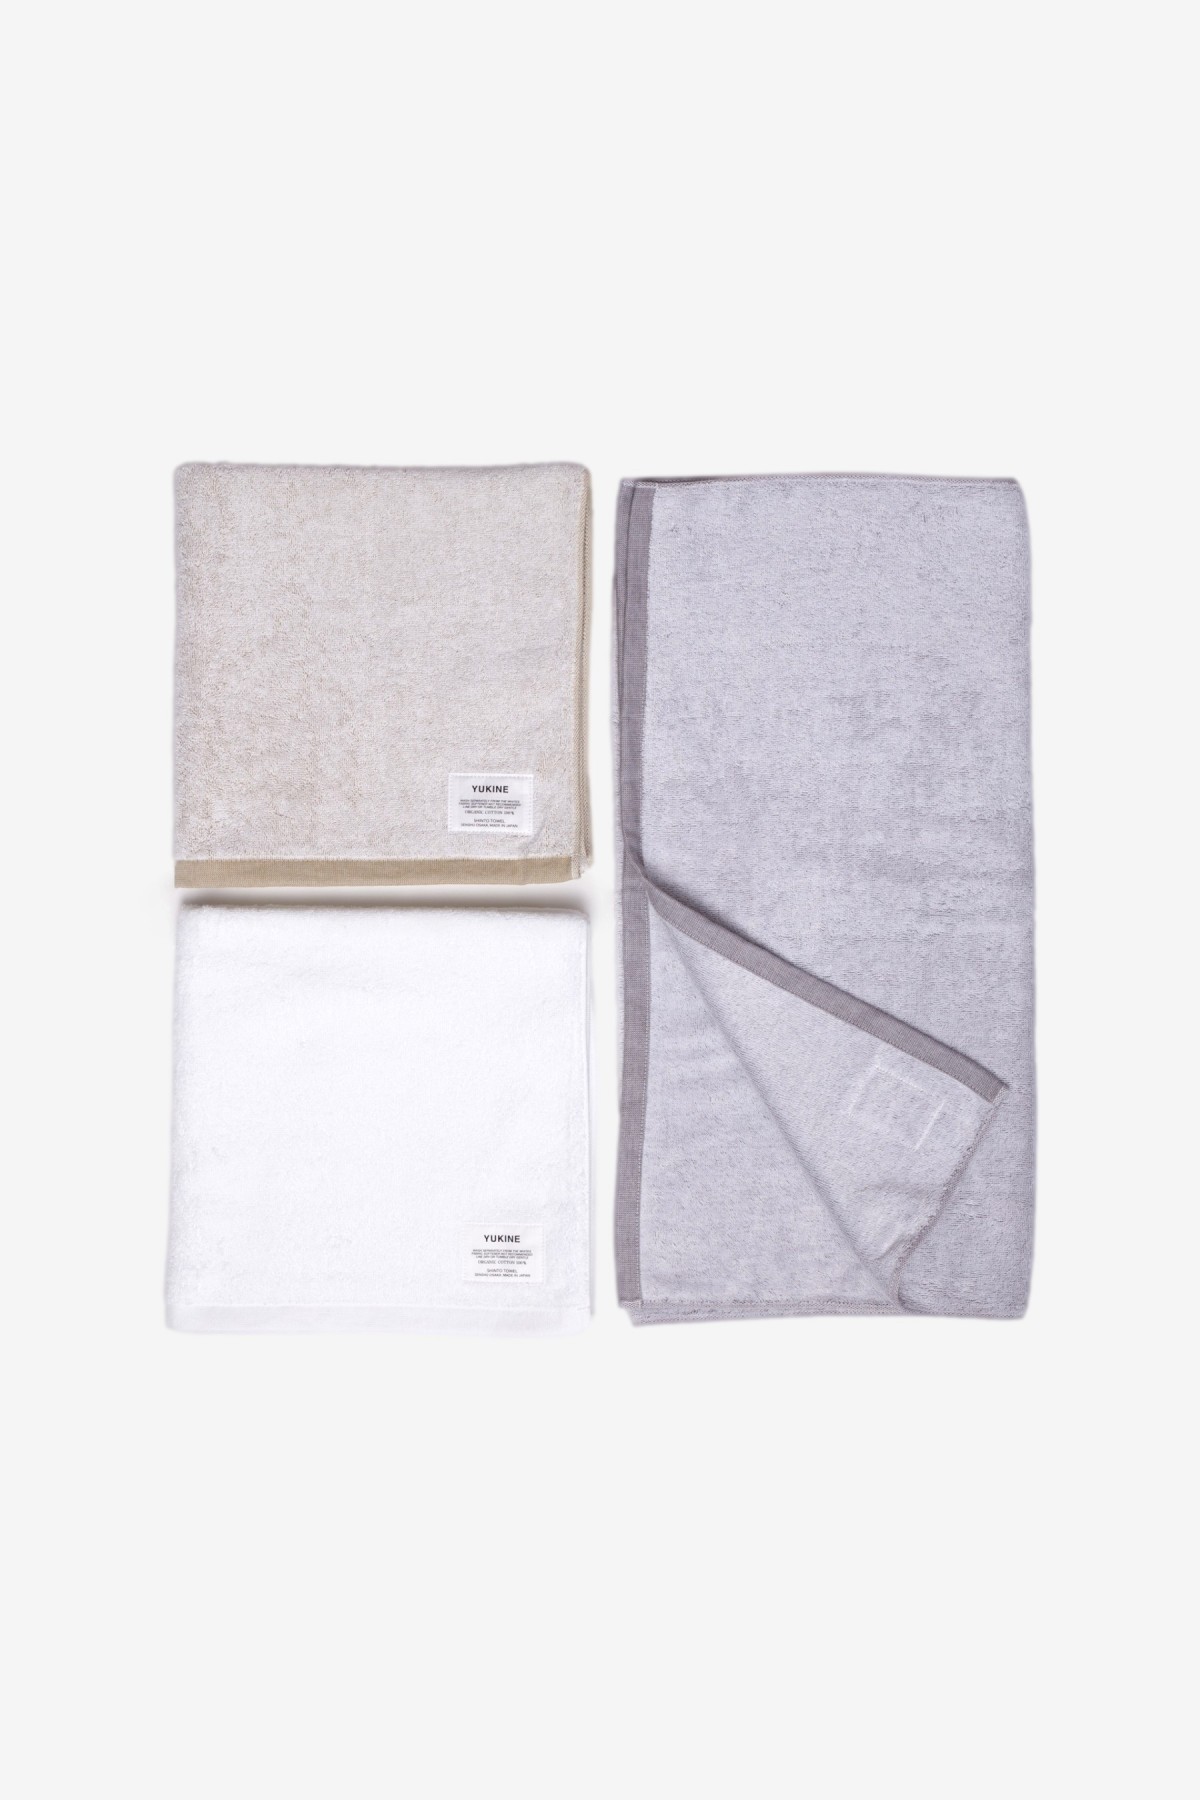 Shinto Yukine  Bath Towel Shiro in White